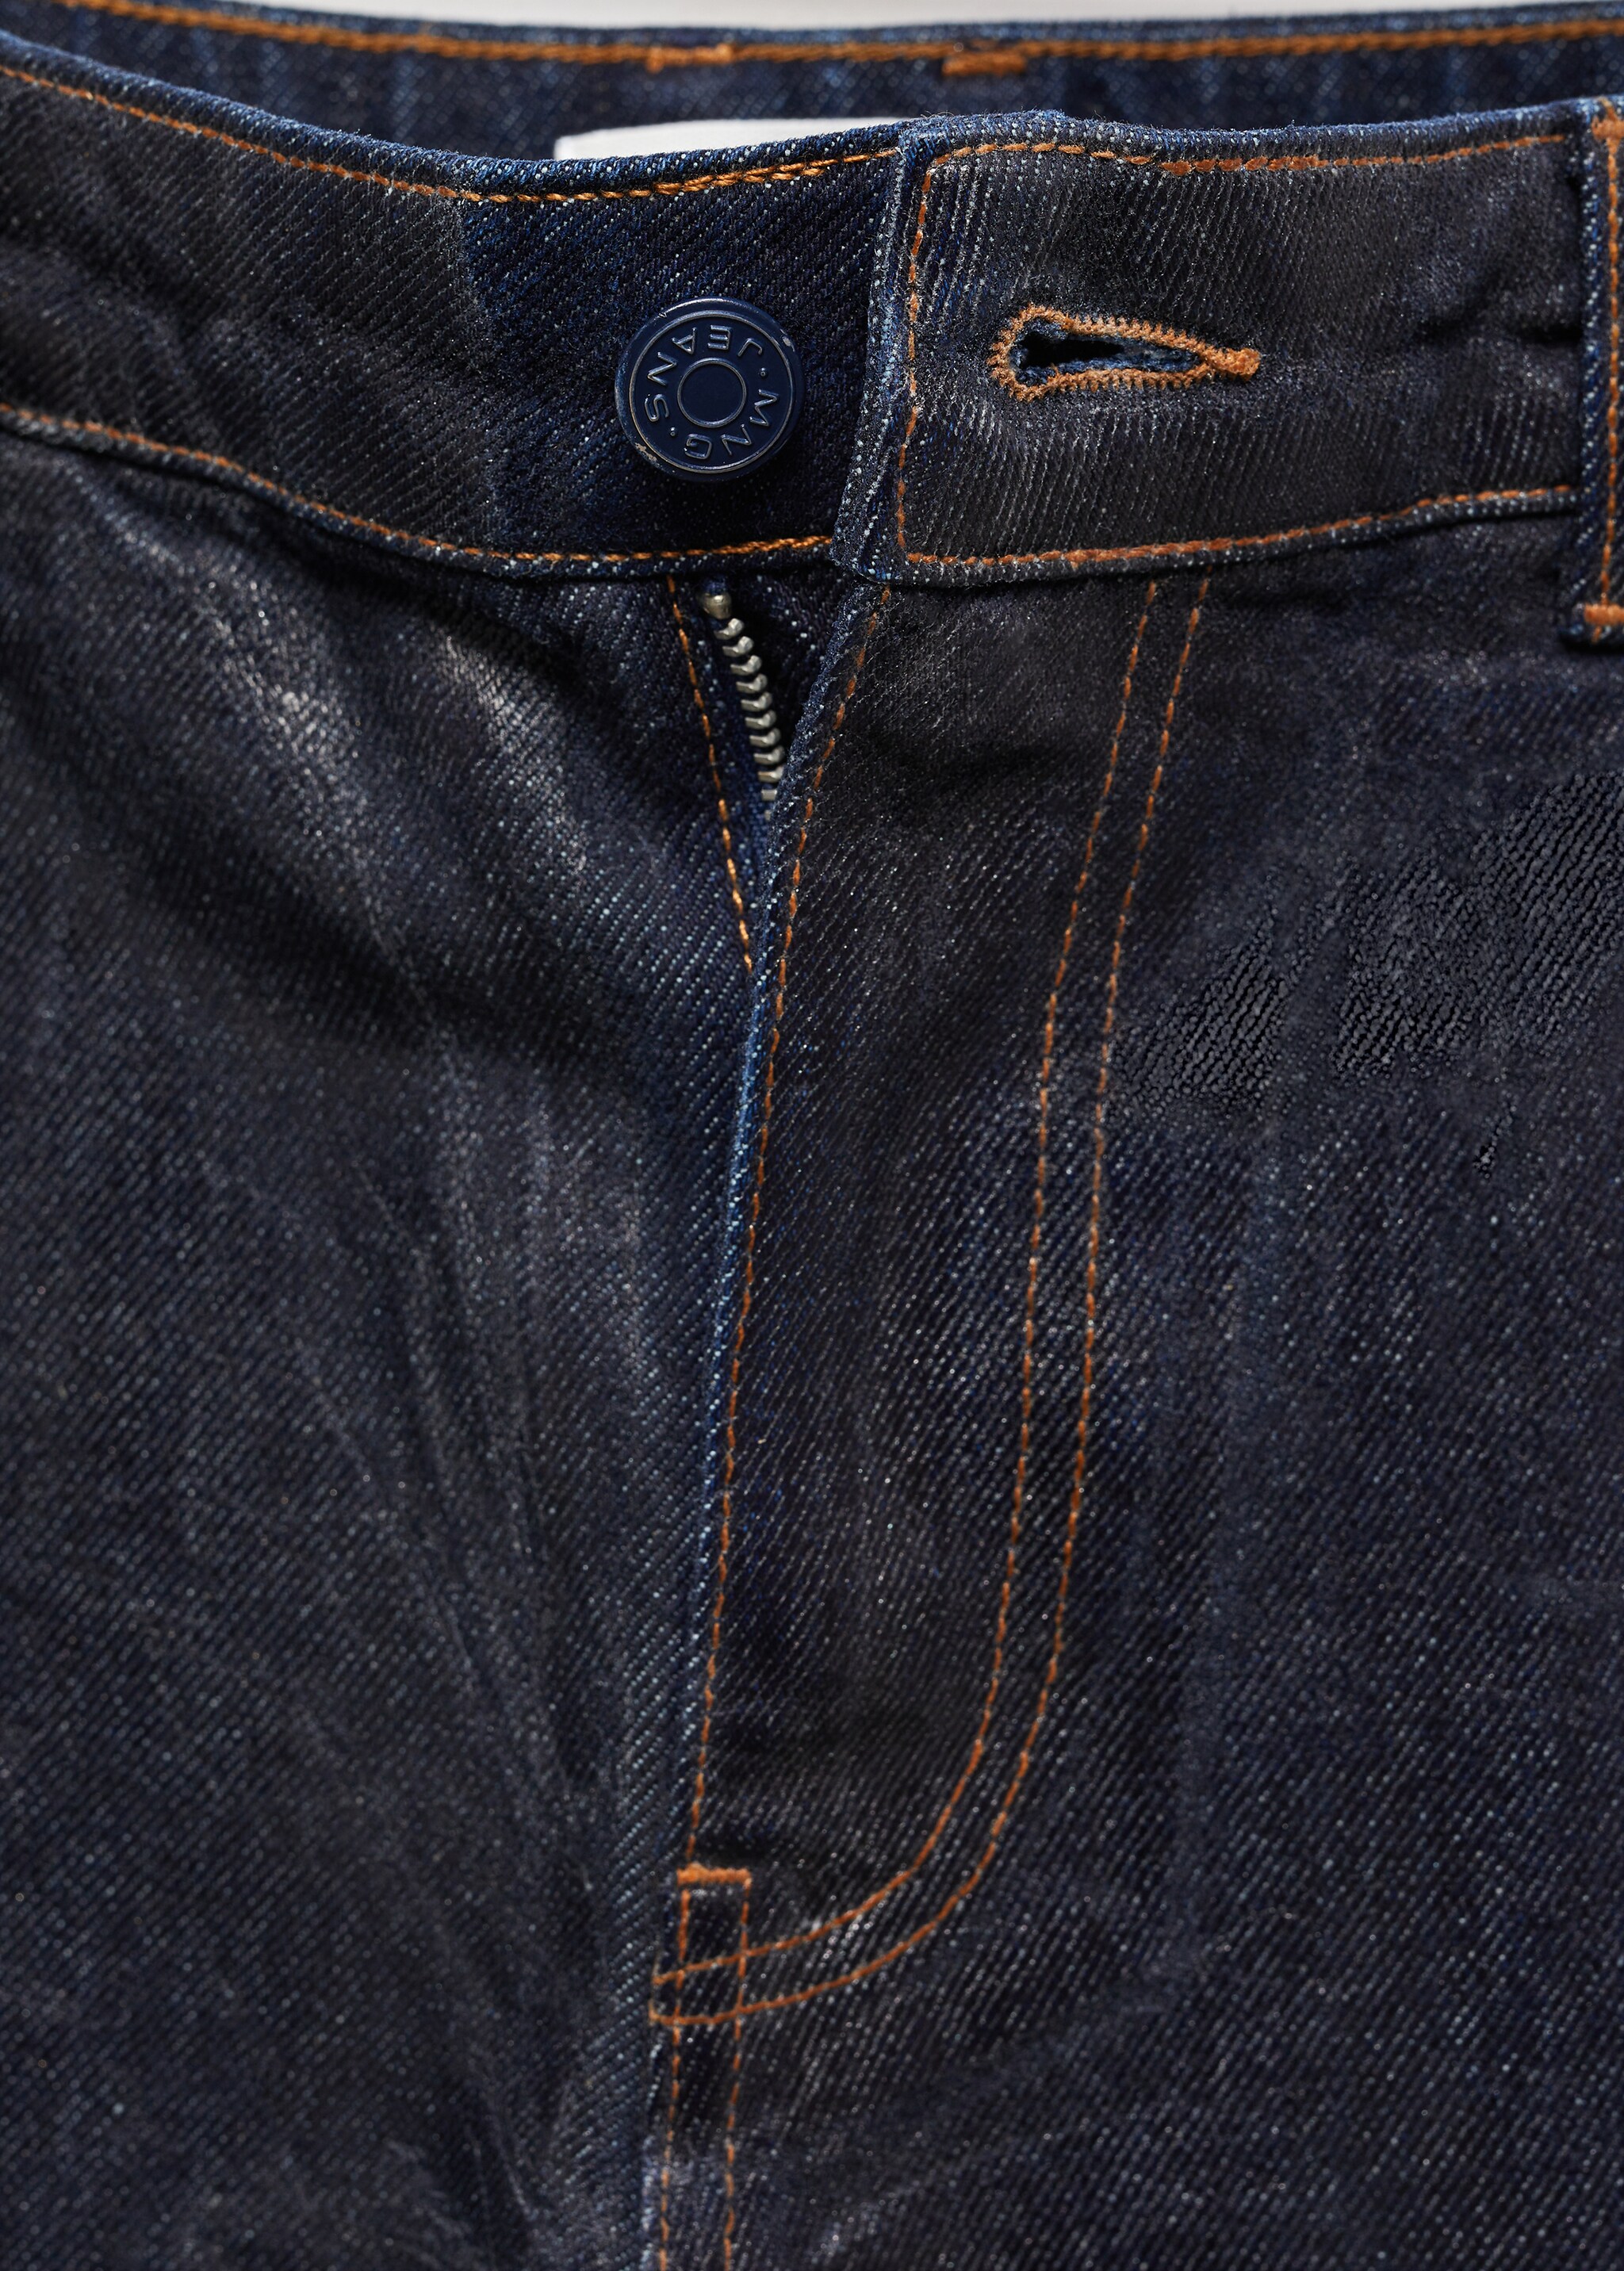 Jeans rectos foil - Detalle del artículo 8